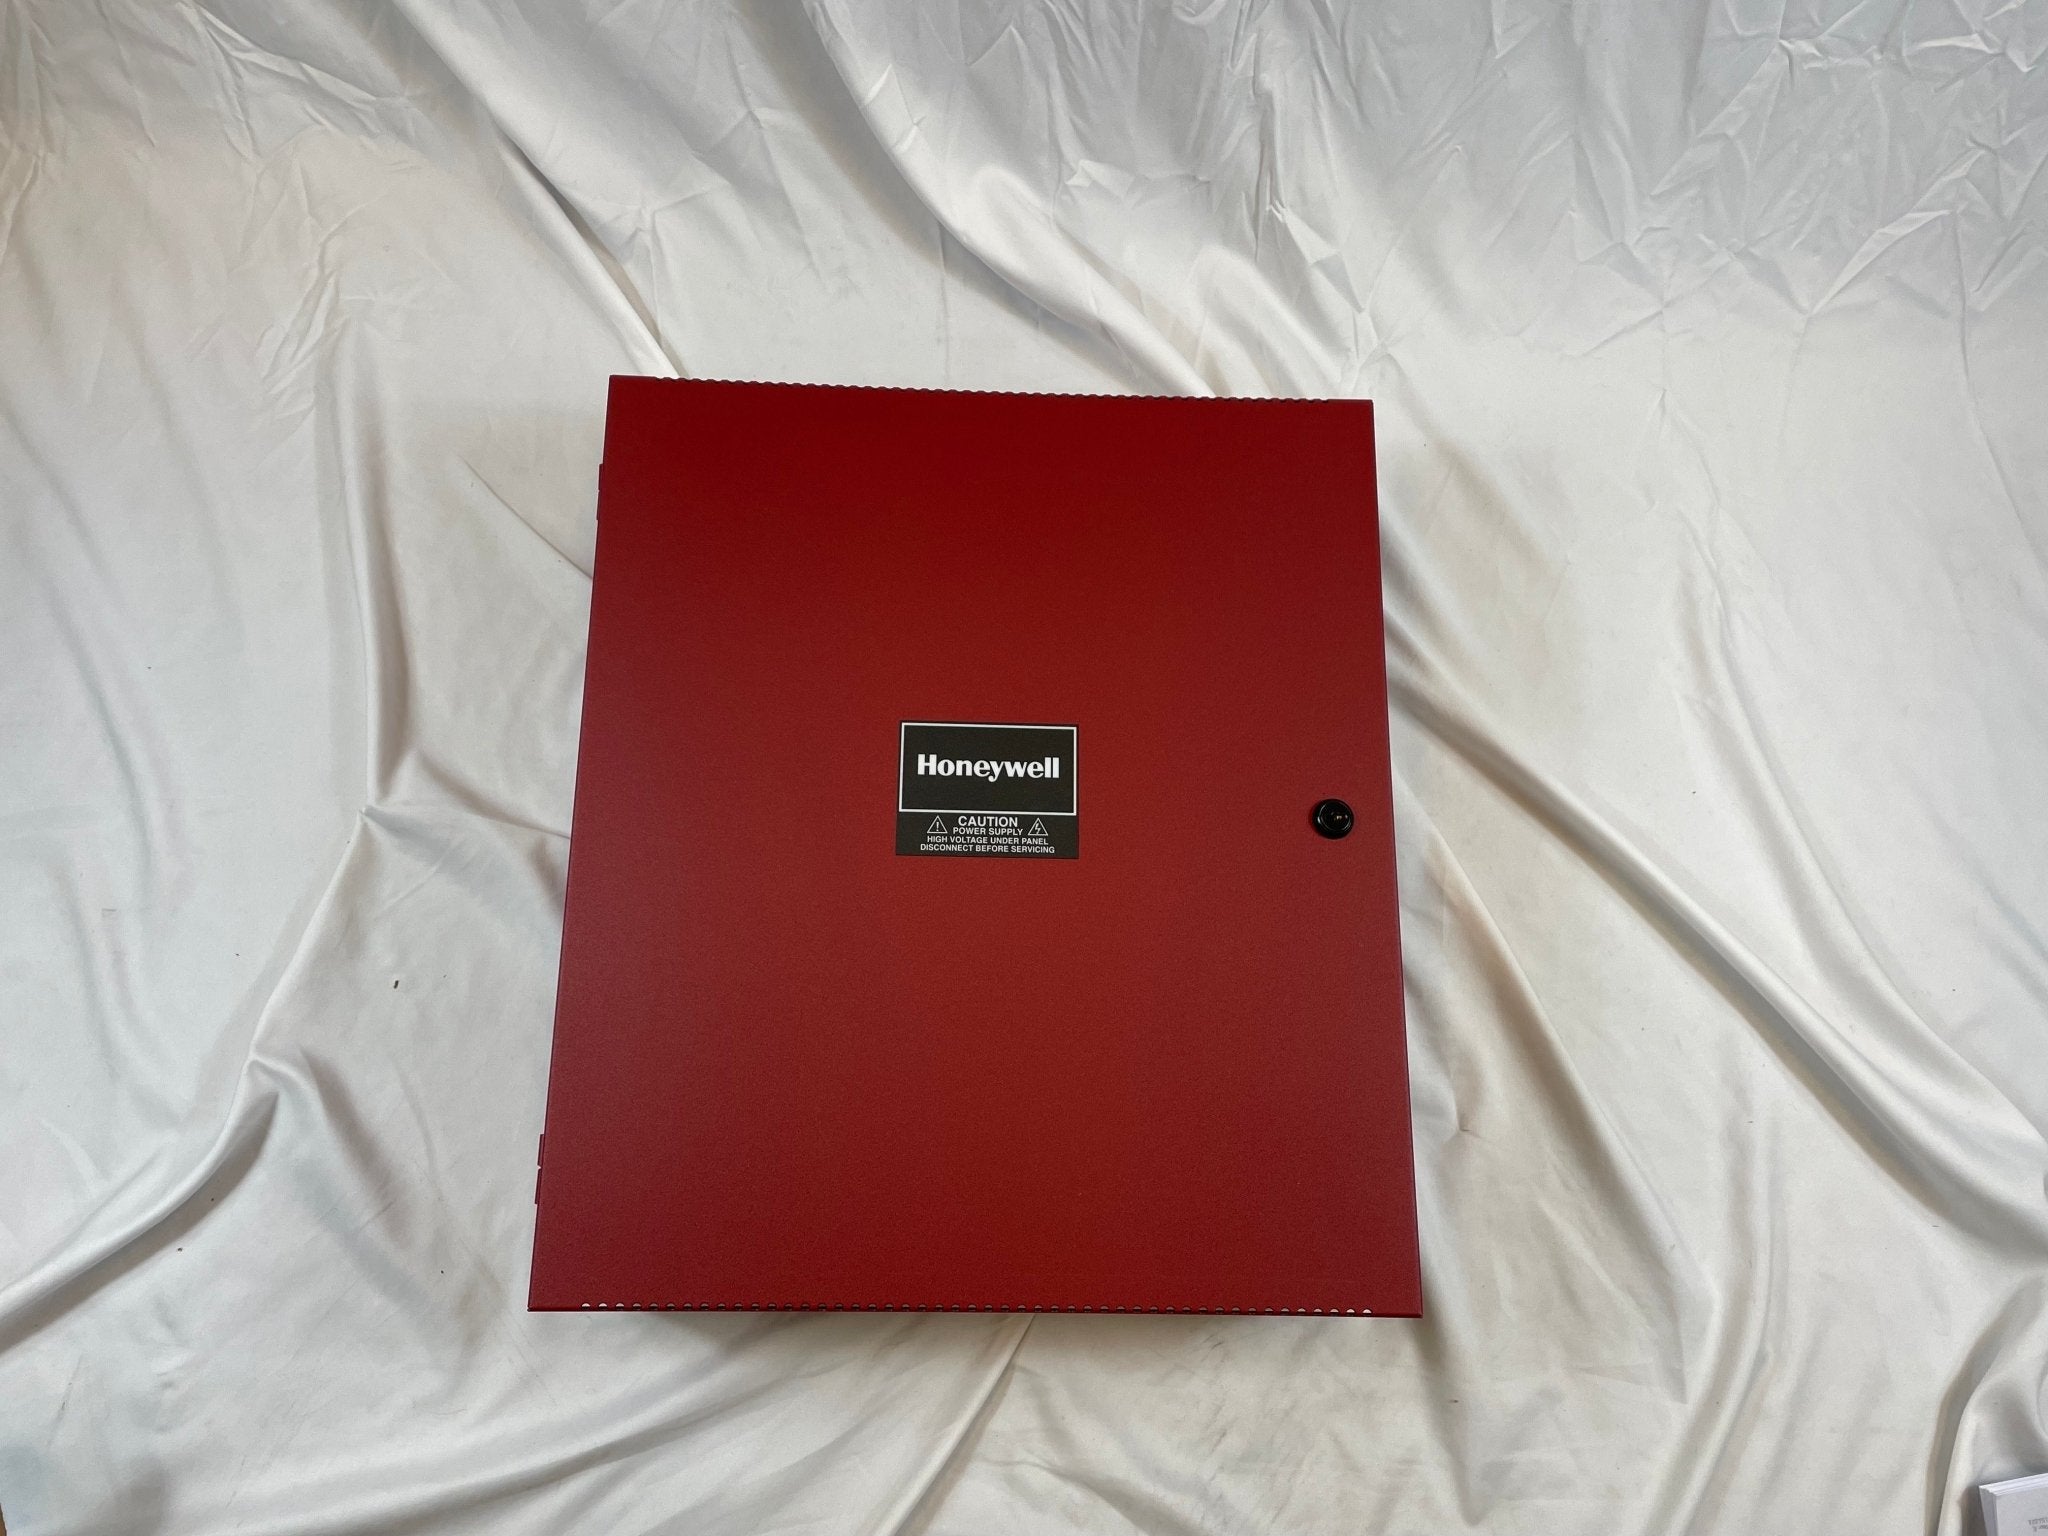 Honeywell HPFF8E - The Fire Alarm Supplier